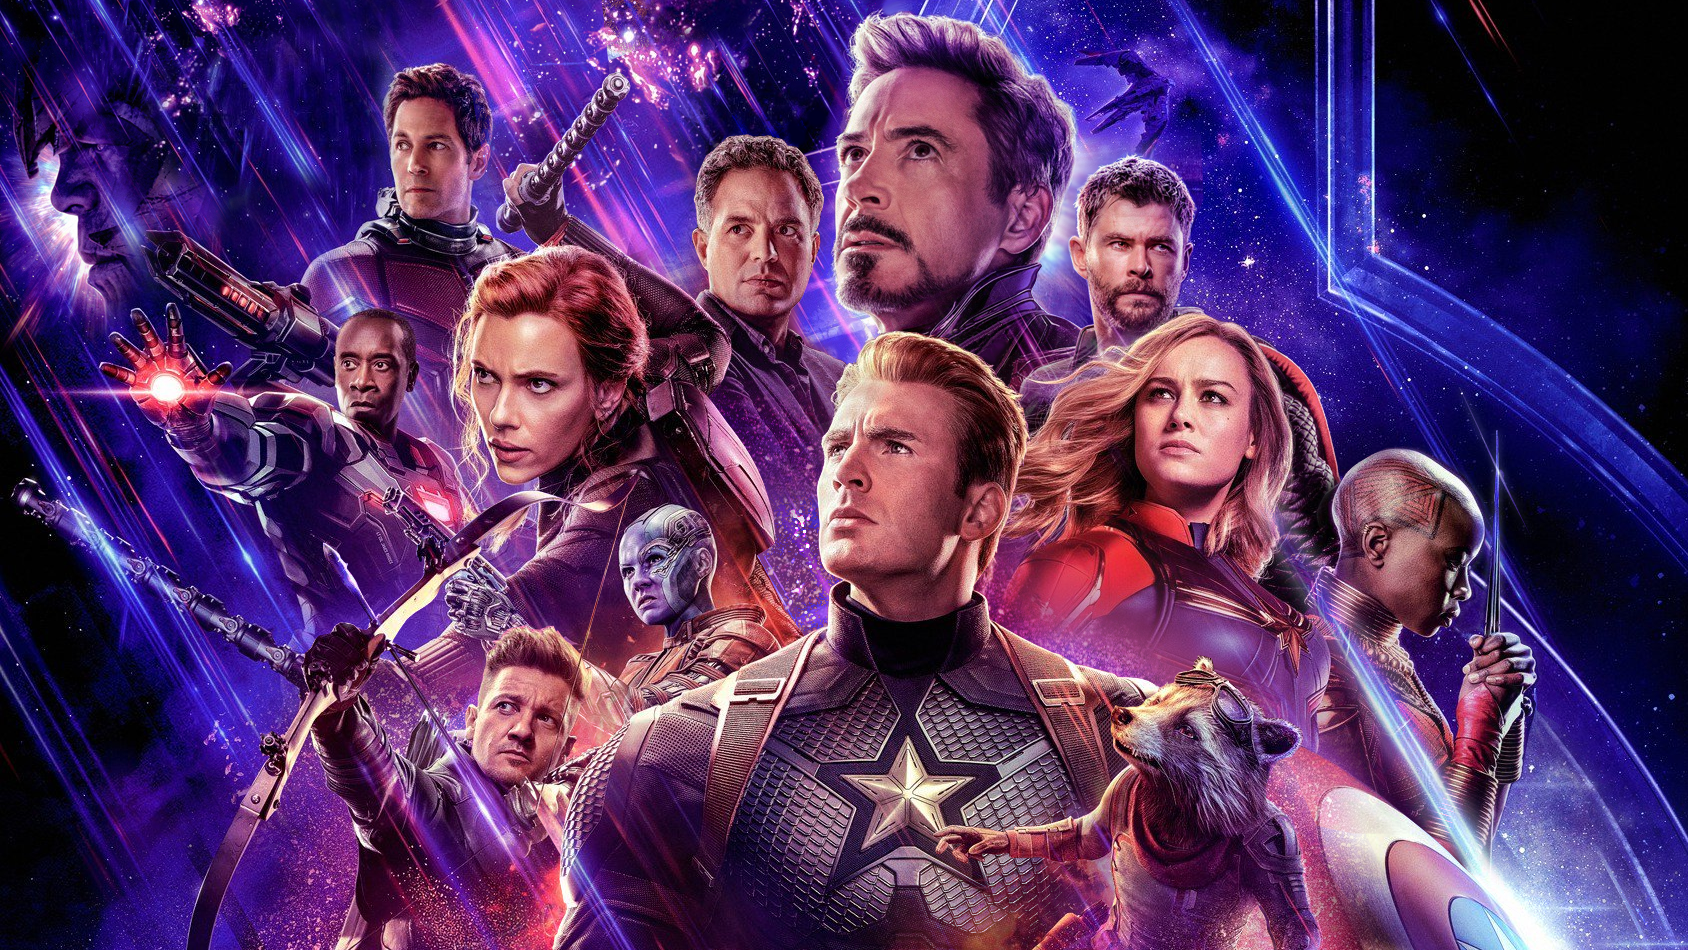 Avengers Endgame Wallpaper (16:9)